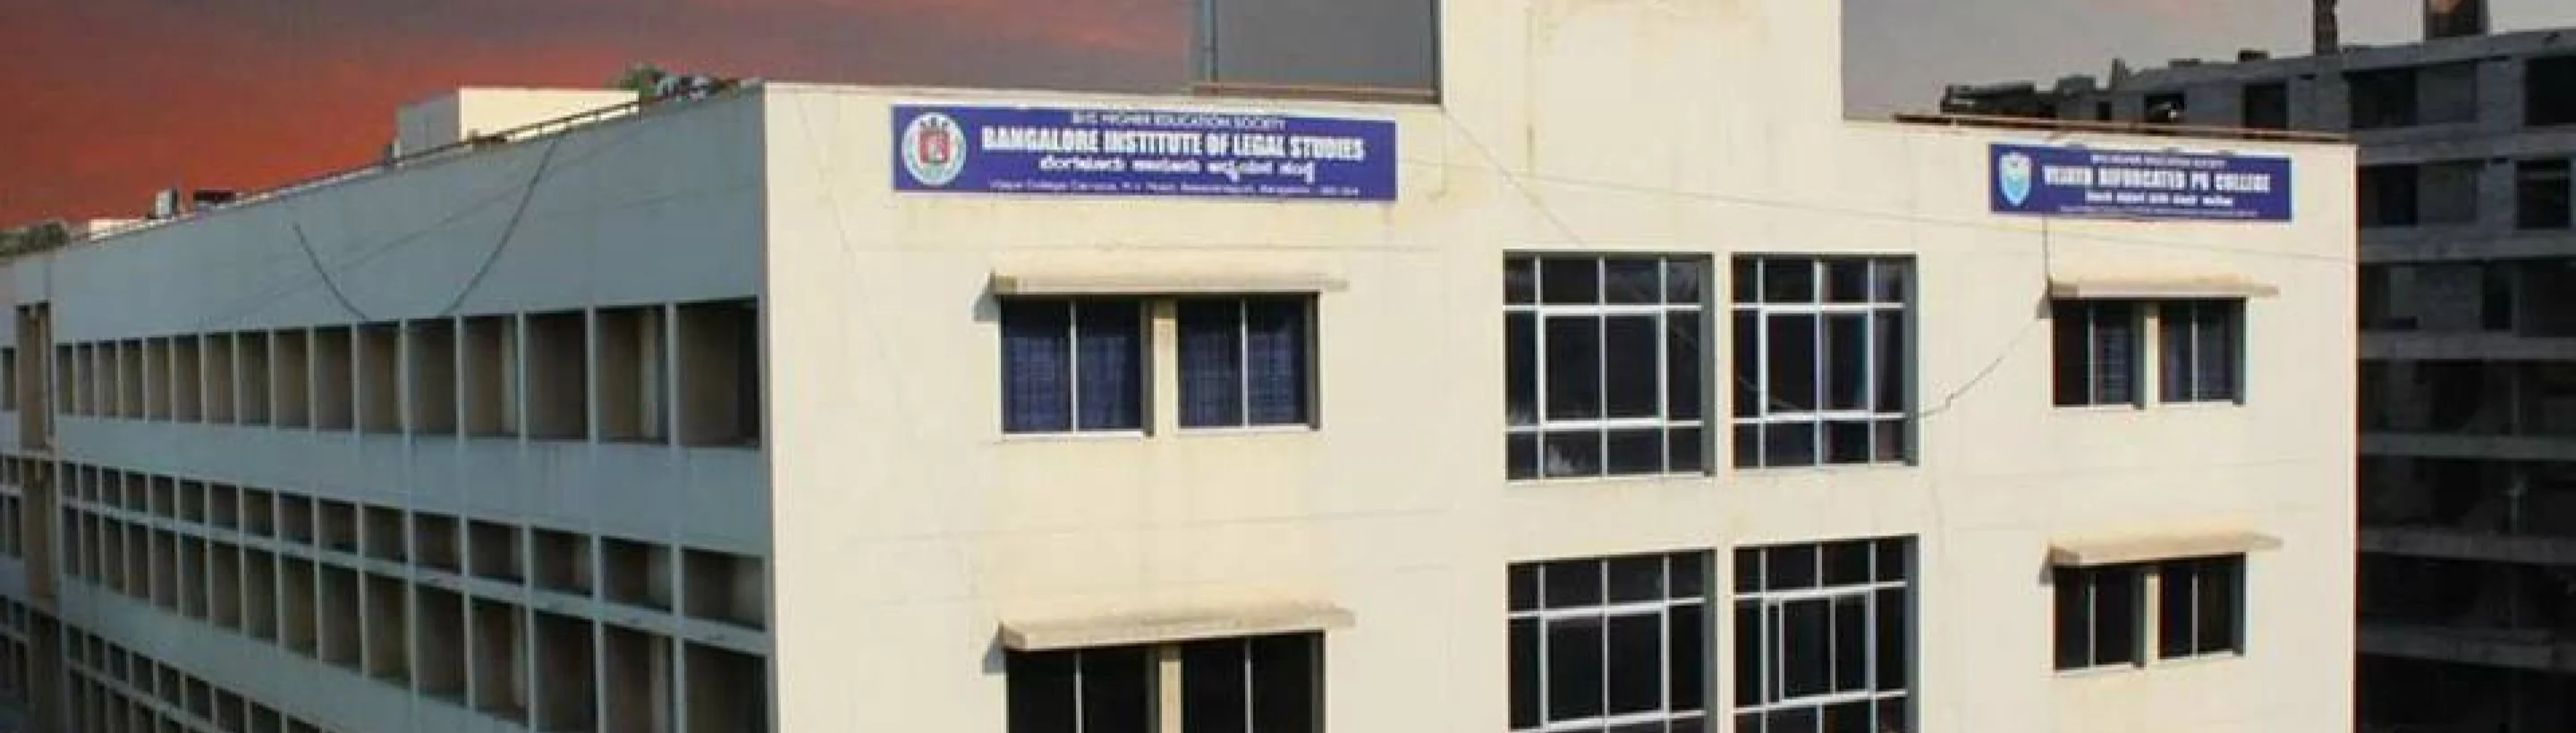 Bangalore Institute of Legal Studies